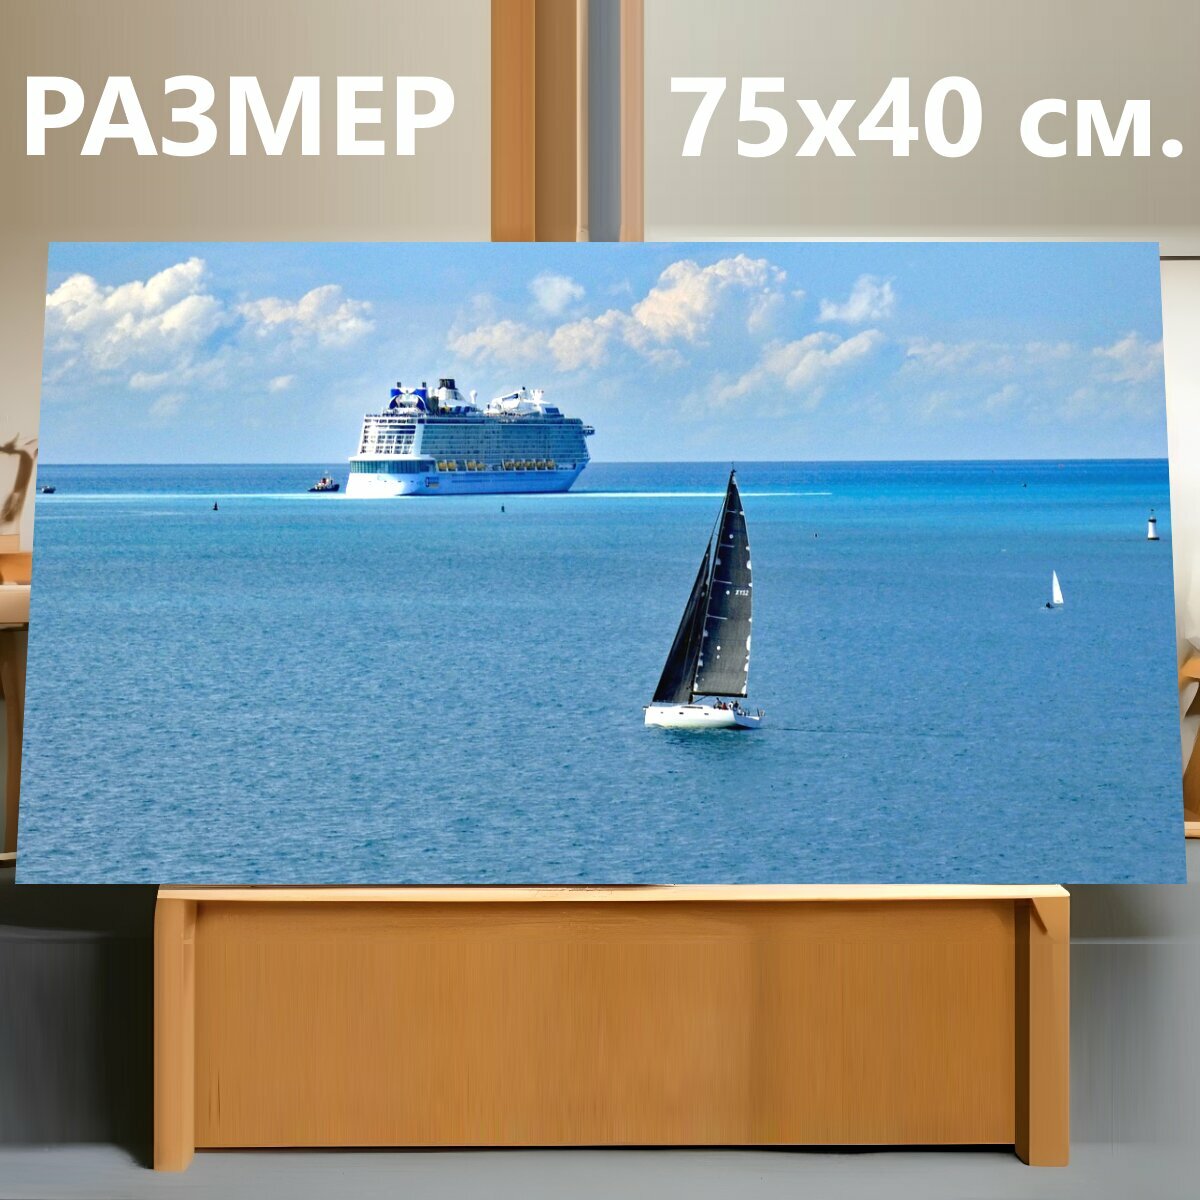 Картина на холсте "Парусное судно, круизное судно, путешествовать" на подрамнике 75х40 см. для интерьера